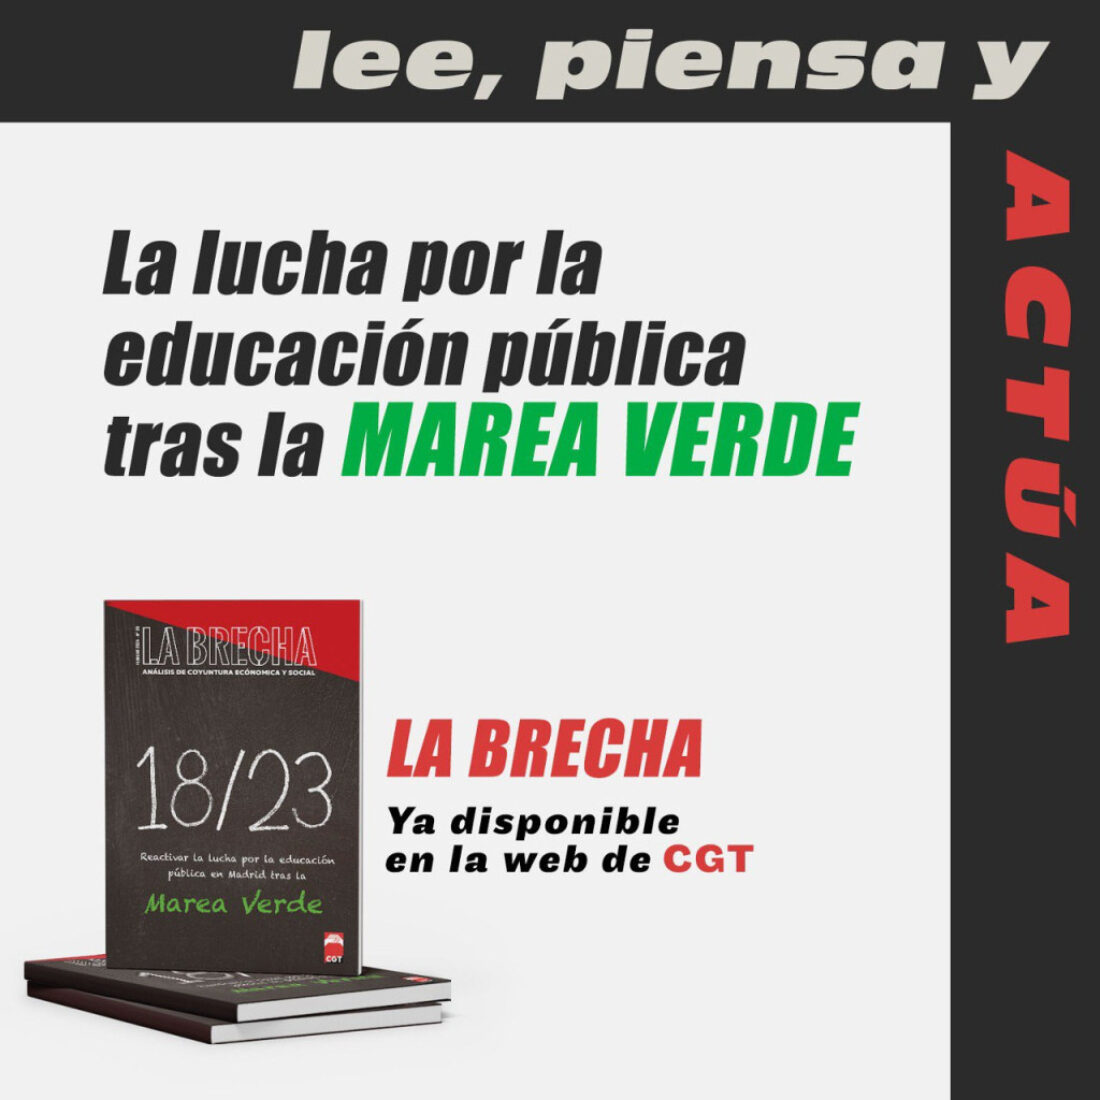 Nuevo número de La Brecha: “18/23 Reactivar la lucha por la educación pública en Madrid tras la Marea Verde”